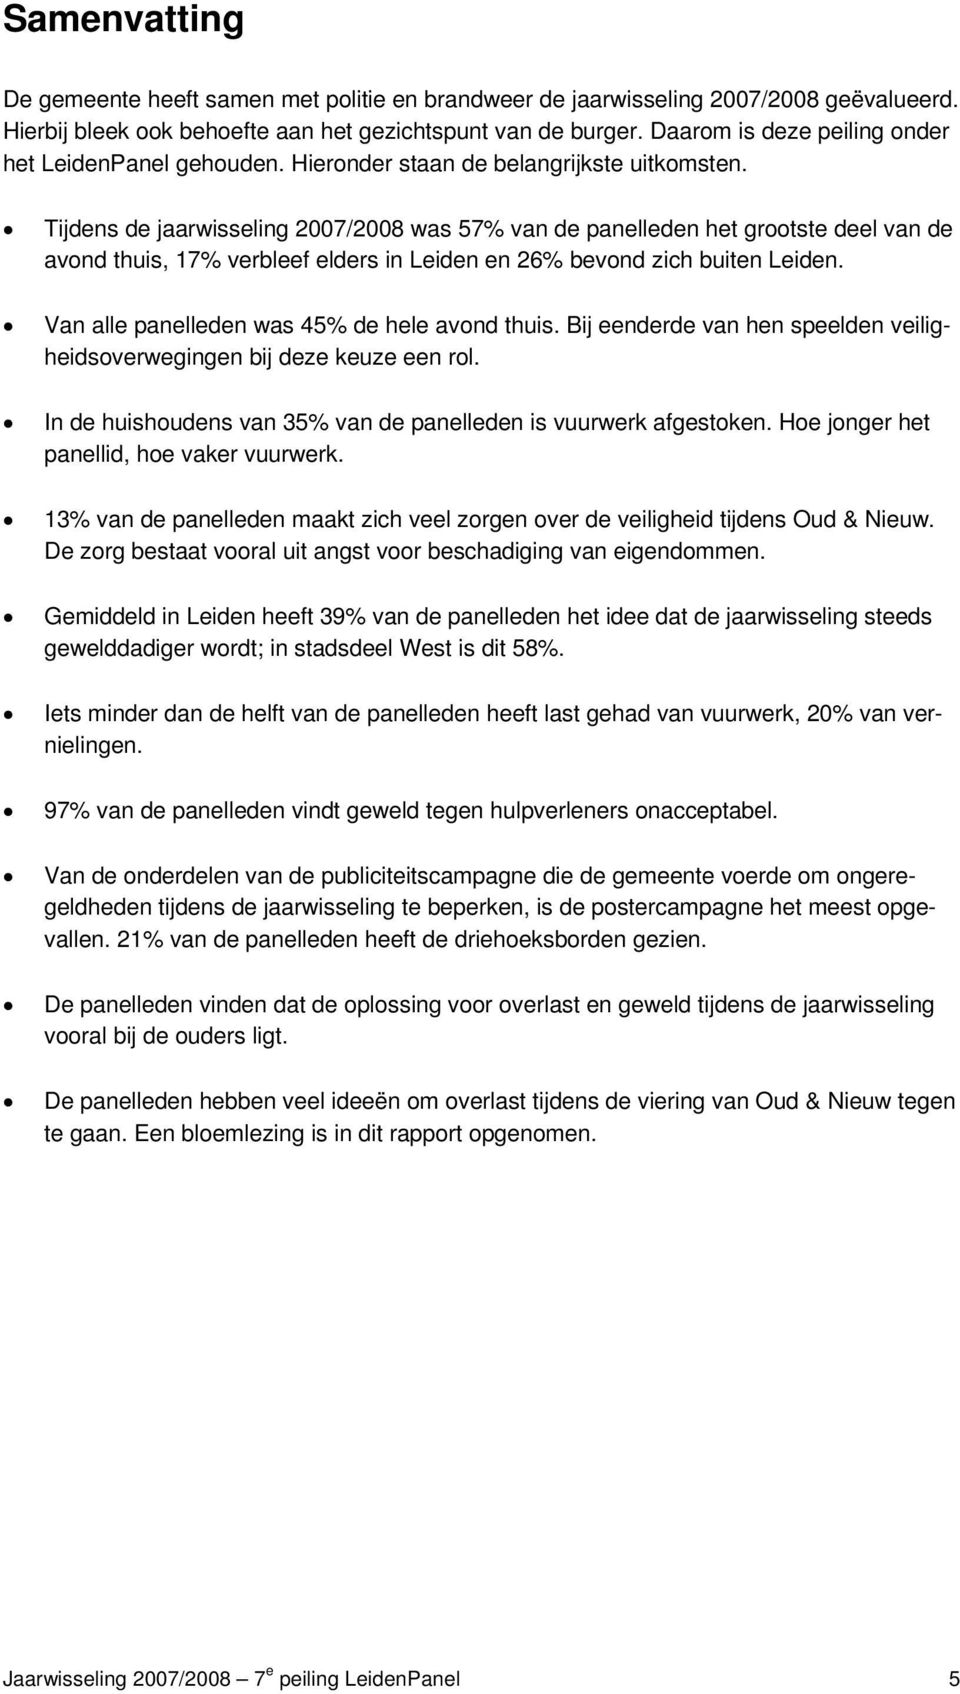 Tijdens de jaarwisseling 2007/2008 was 57% van de panelleden het grootste deel van de avond thuis, 17% verbleef elders in Leiden en 26% bevond zich buiten Leiden.